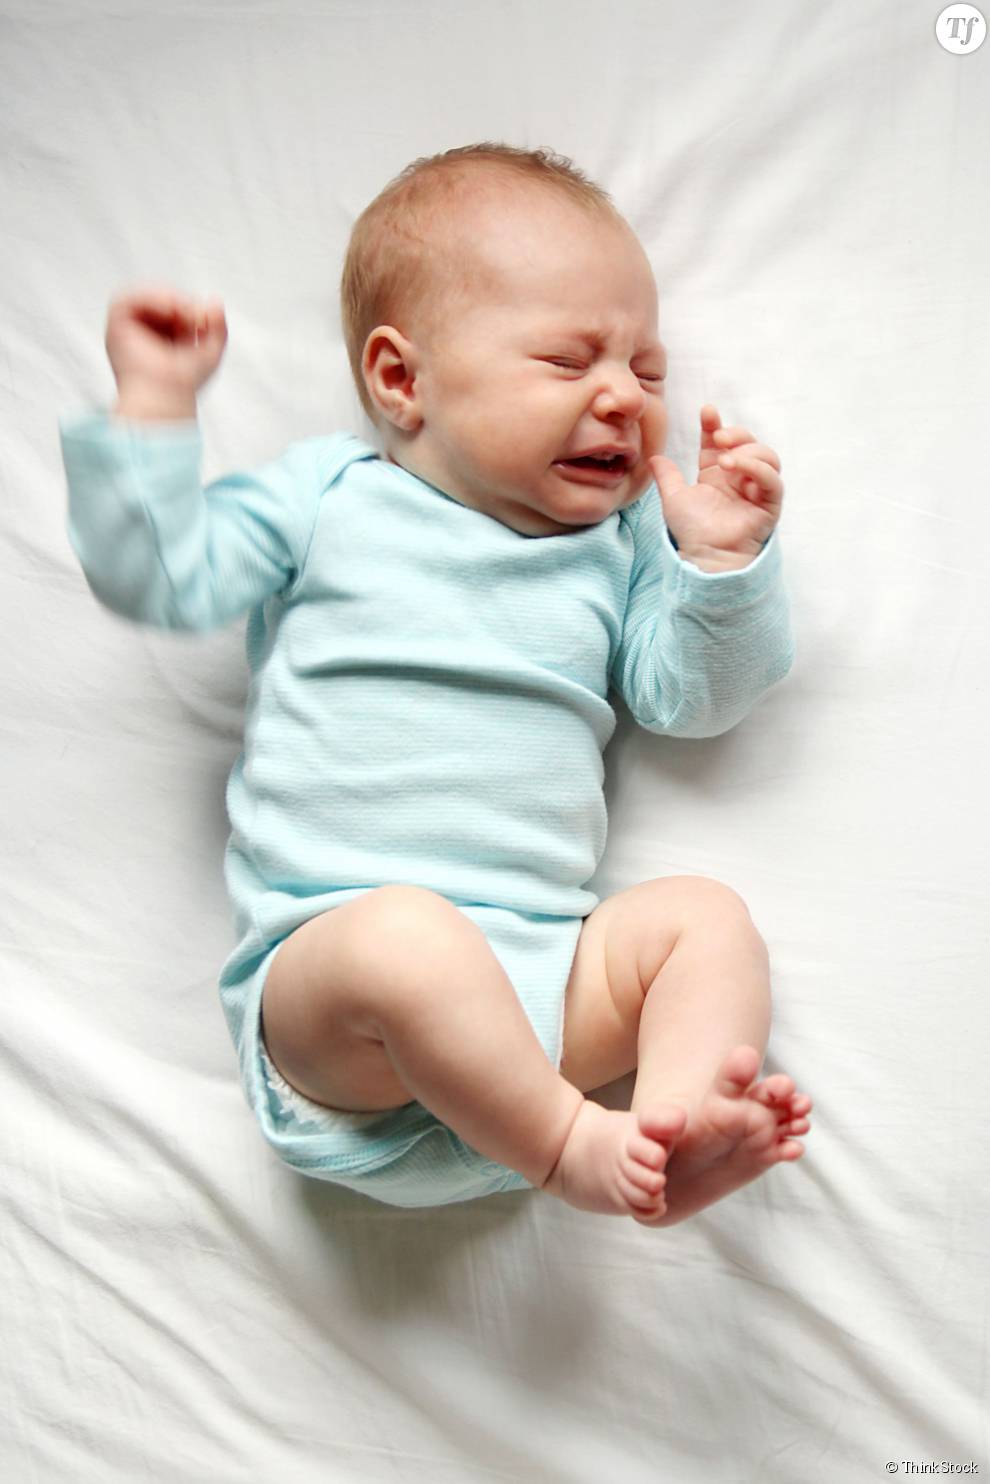 Comment faire pour calmer un bébé qui pleure ?